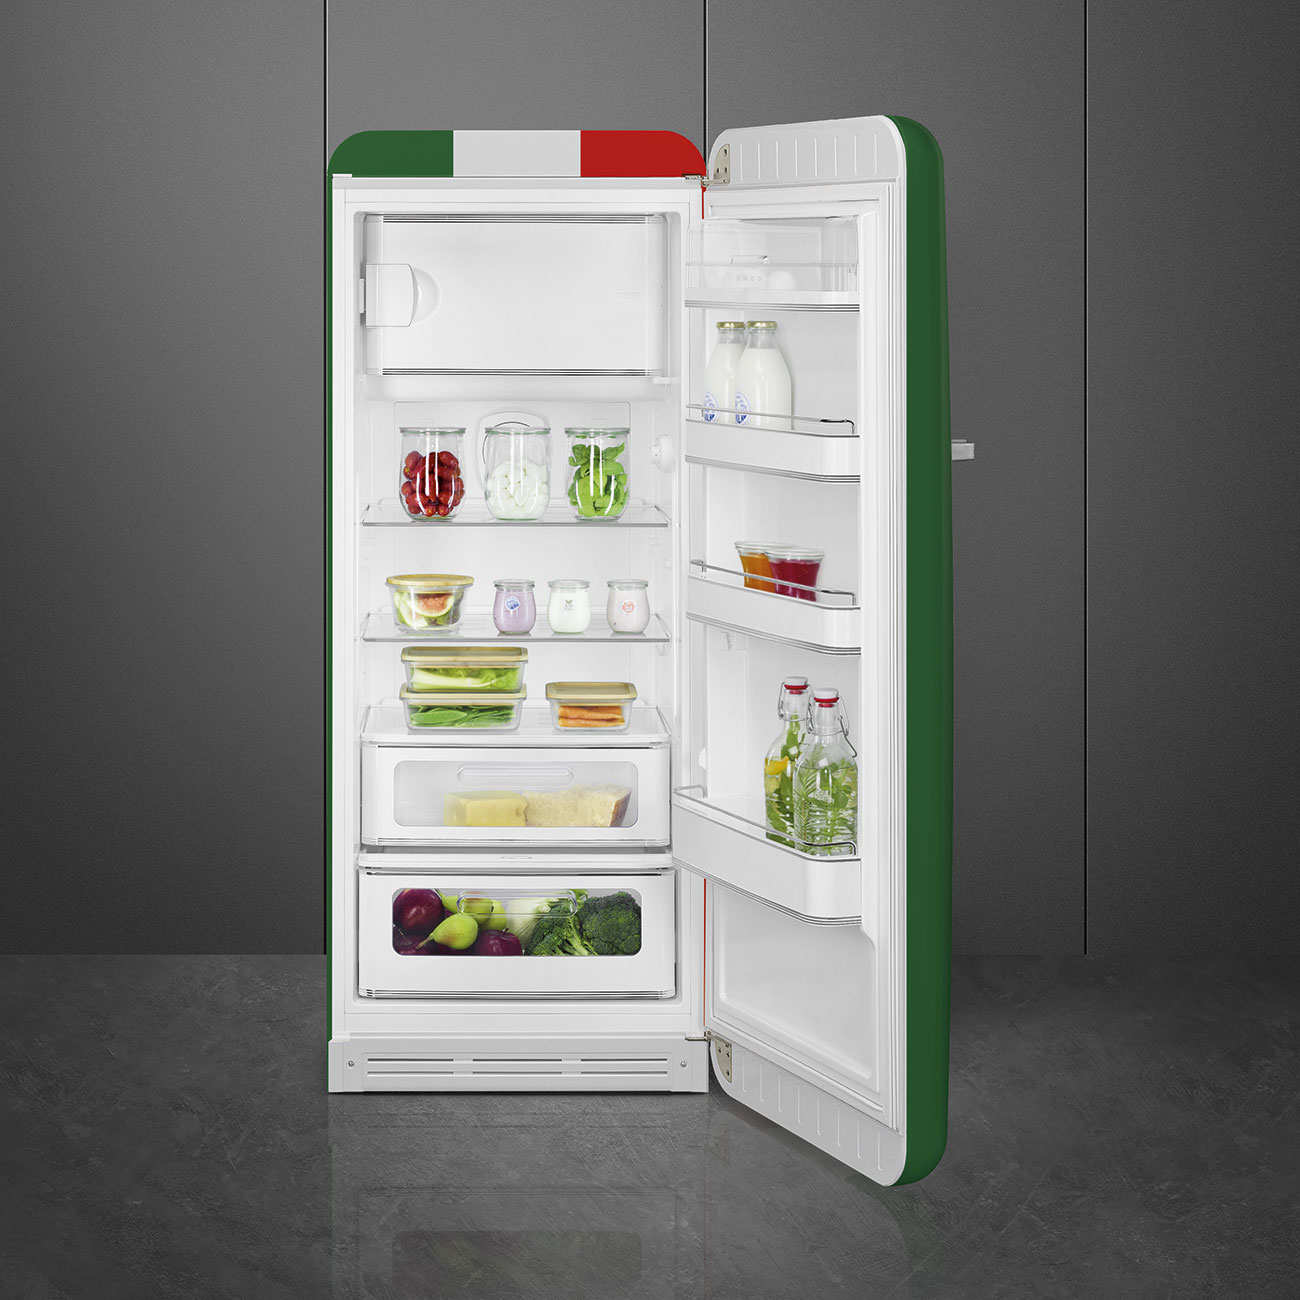 Decorated / Special refrigerator - Smeg_8